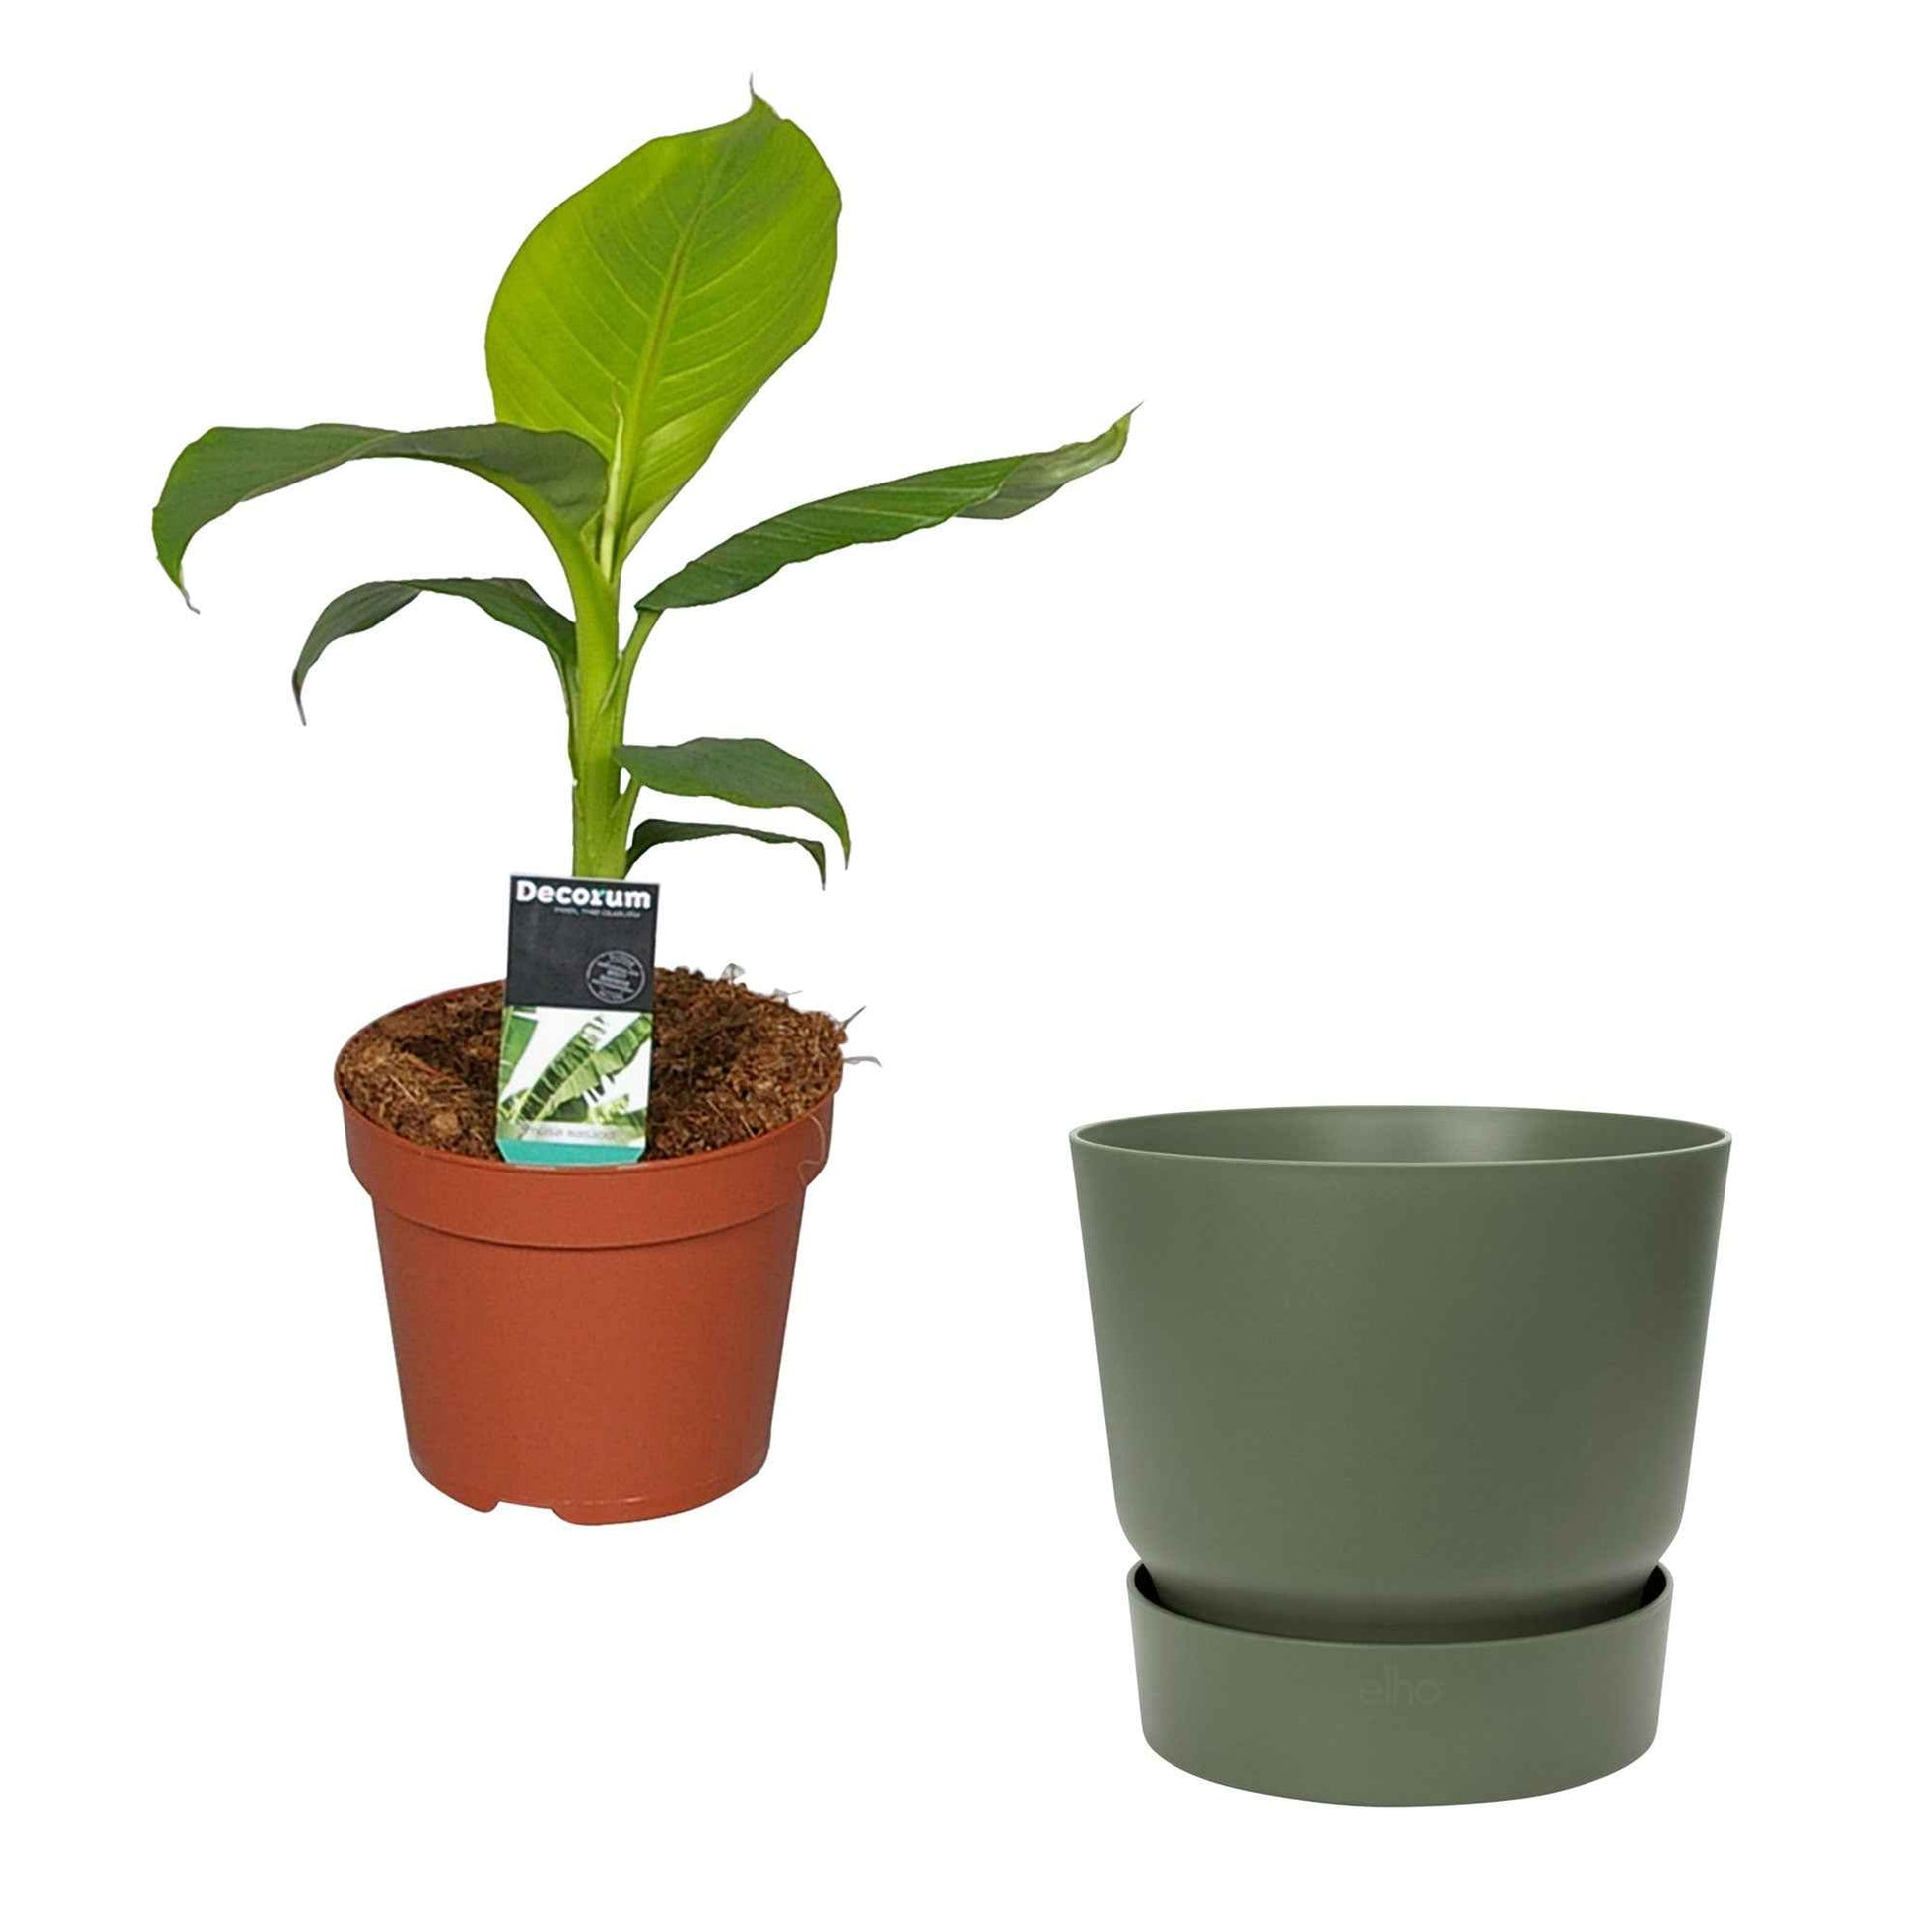 Bananenpflanze Musa basjoo inkl. Elho-Dekotopf, grün - Pflanzen Geschenke für den Garten